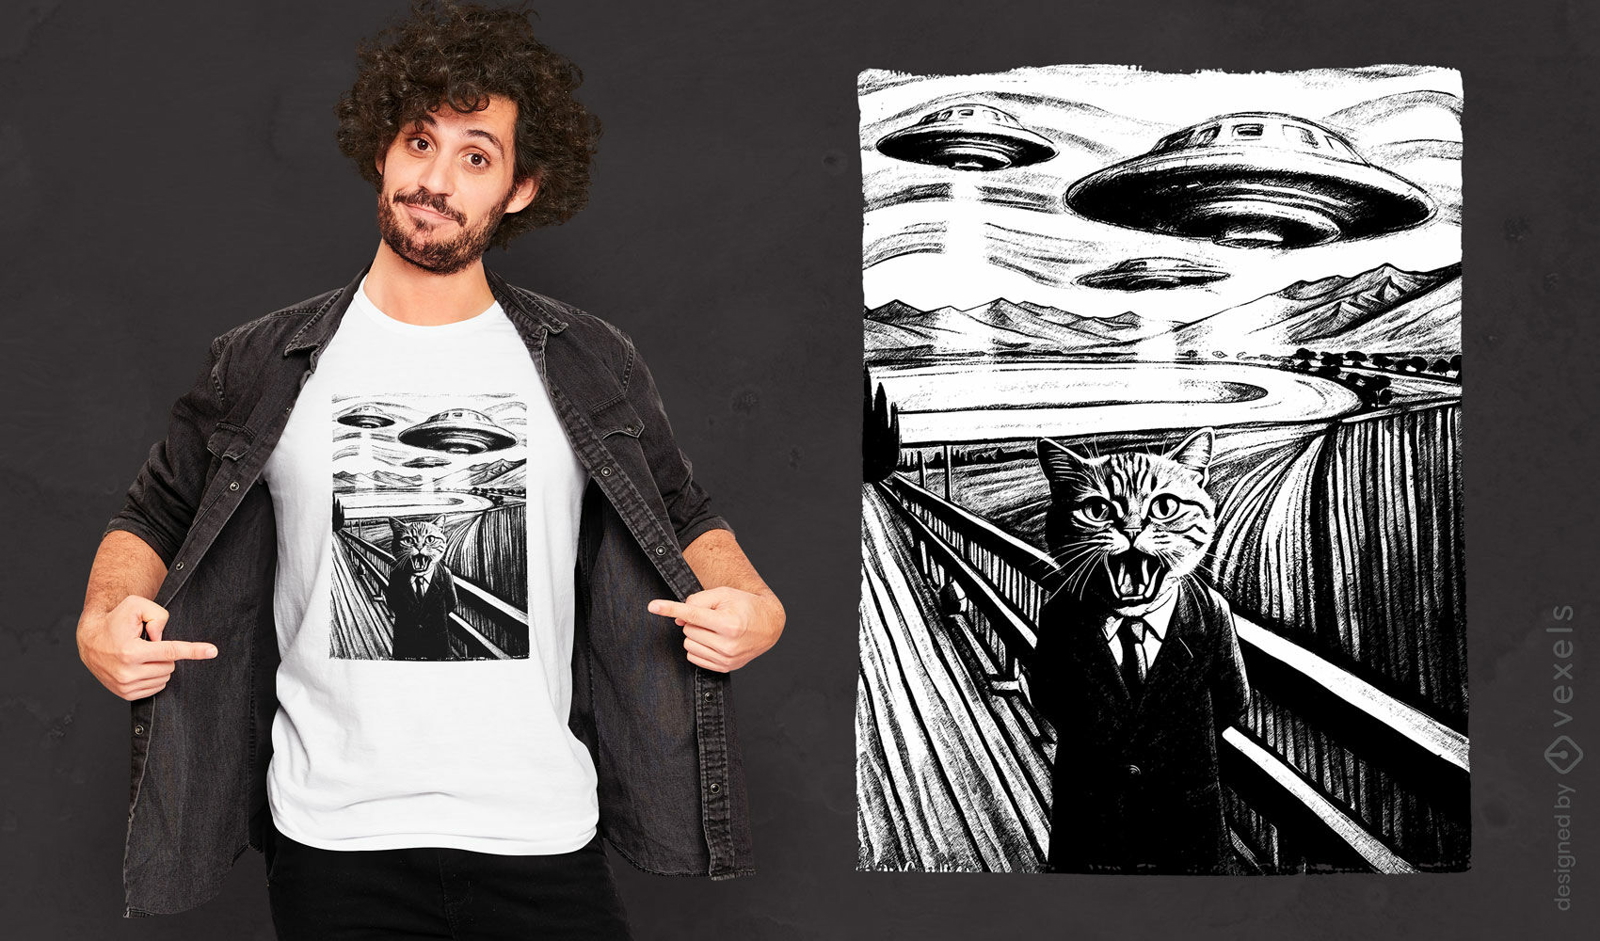 Munch's scream style ufo an cat t-shirt design